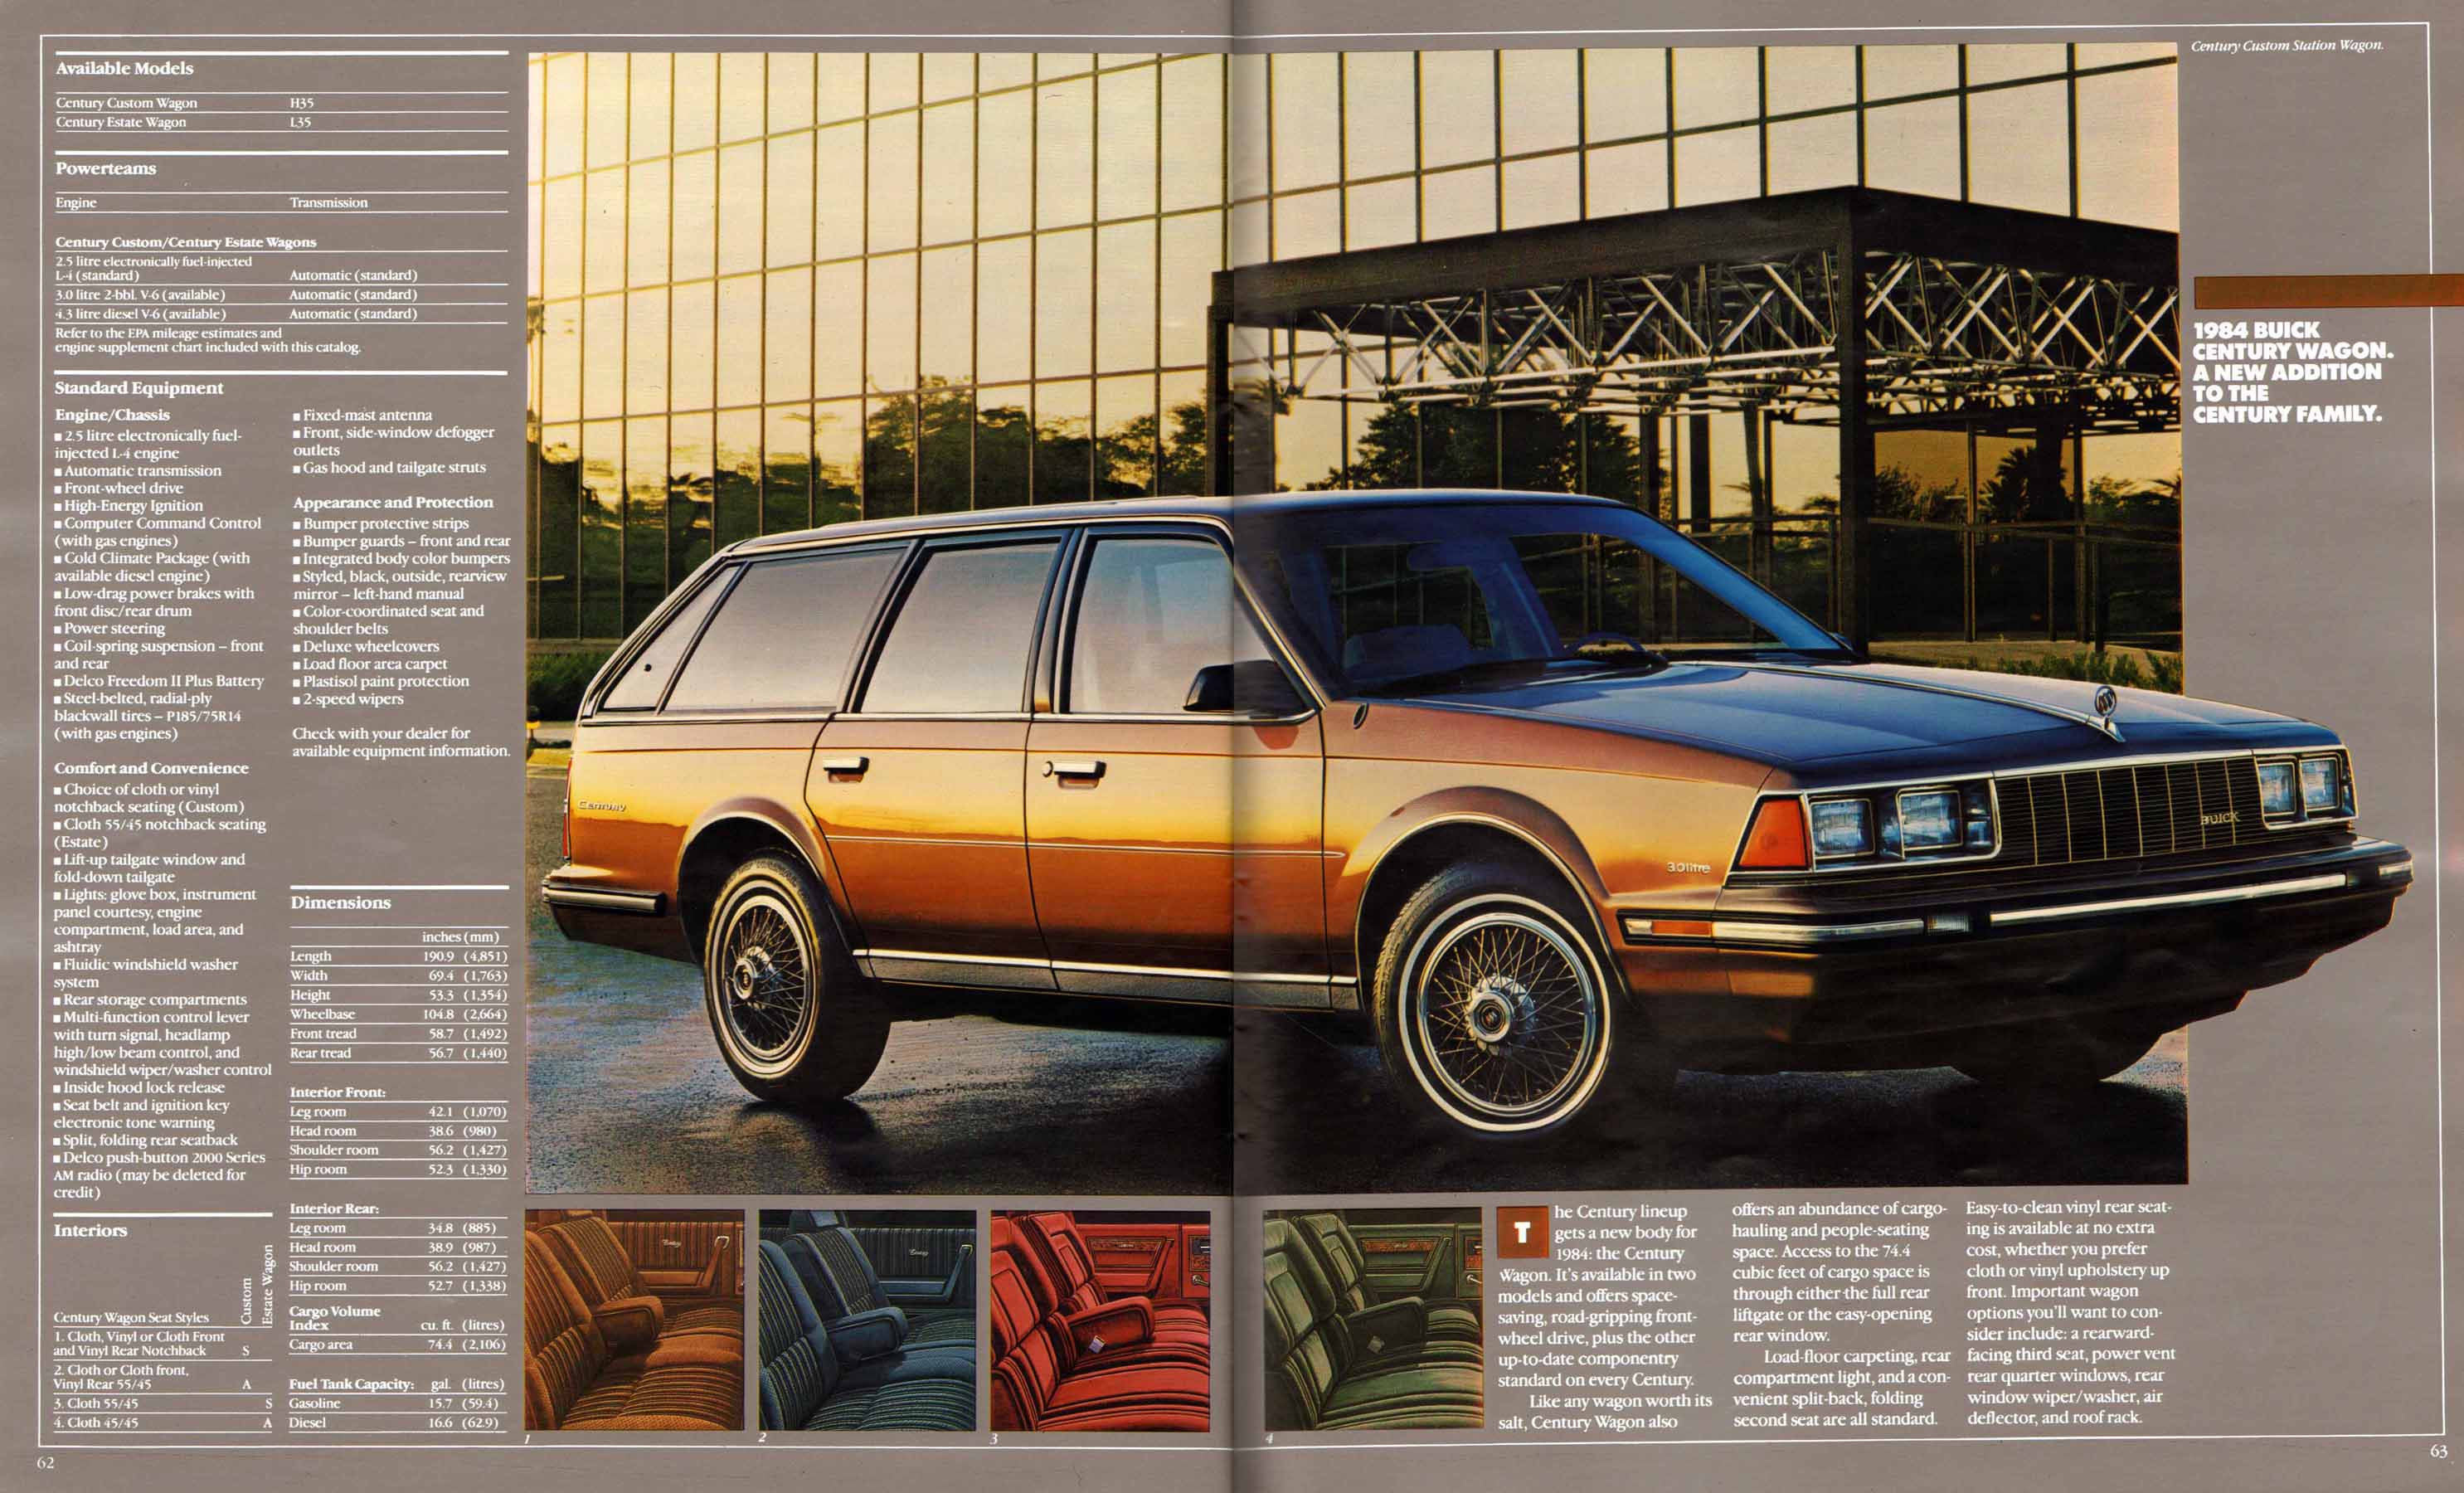 1984 Buick Full Line Prestige-62-63